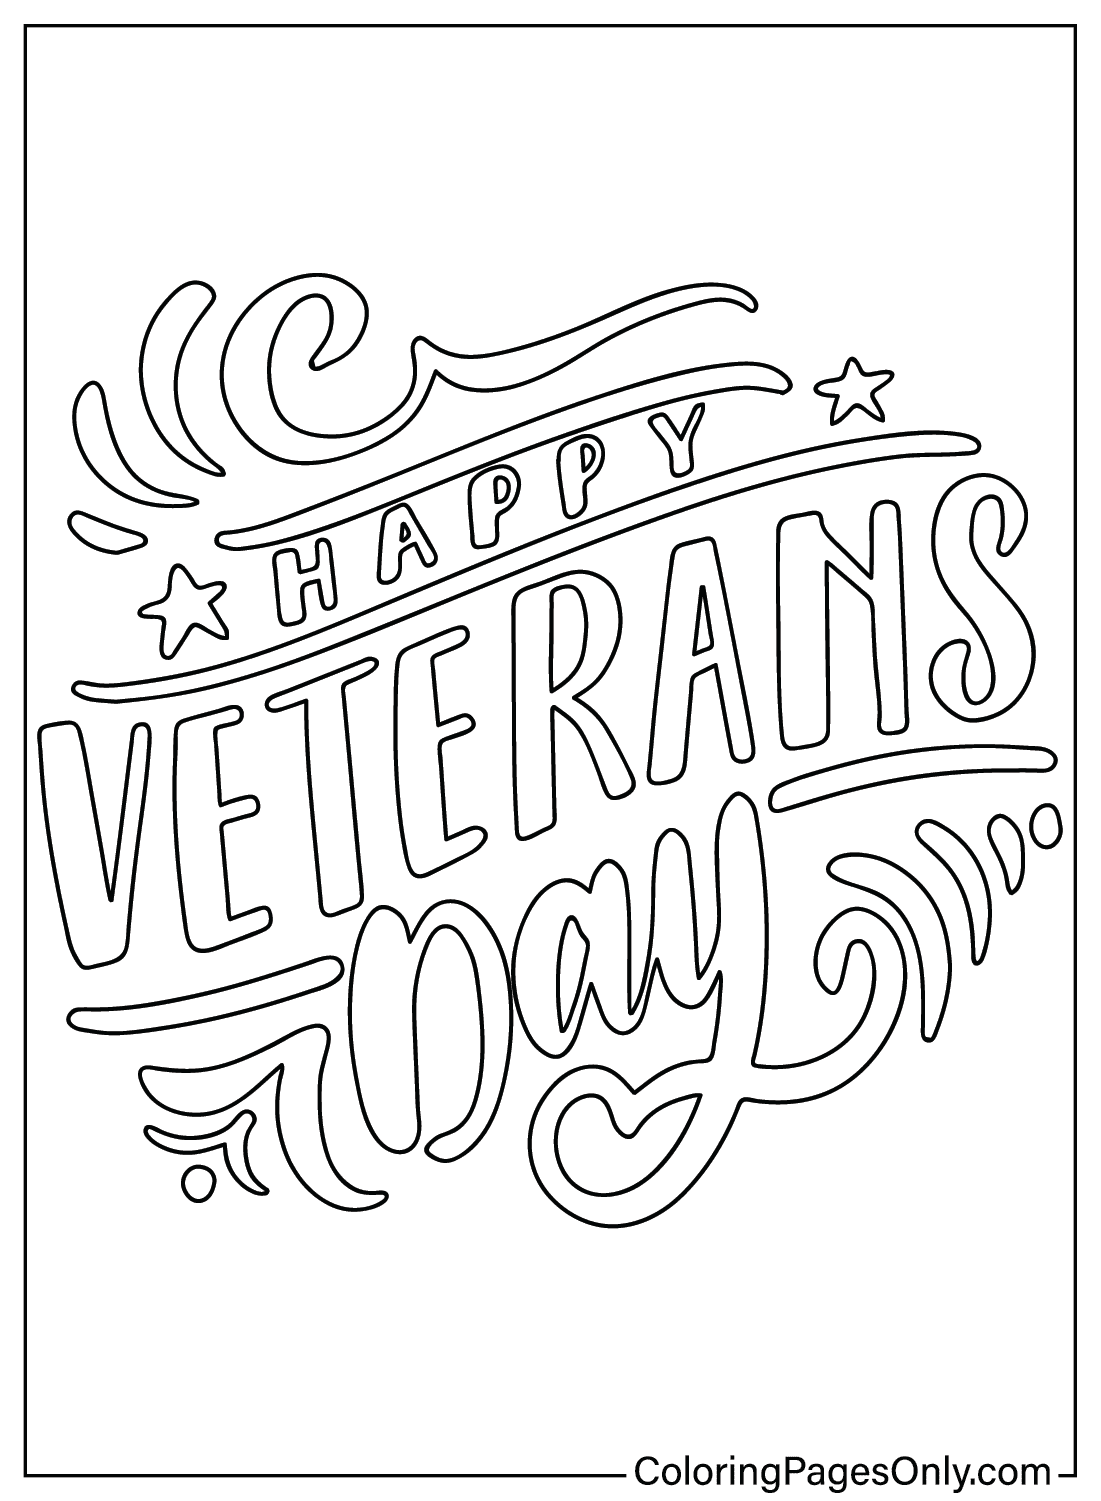 Бесплатная раскраска ко Дню ветеранов от Veterans Day